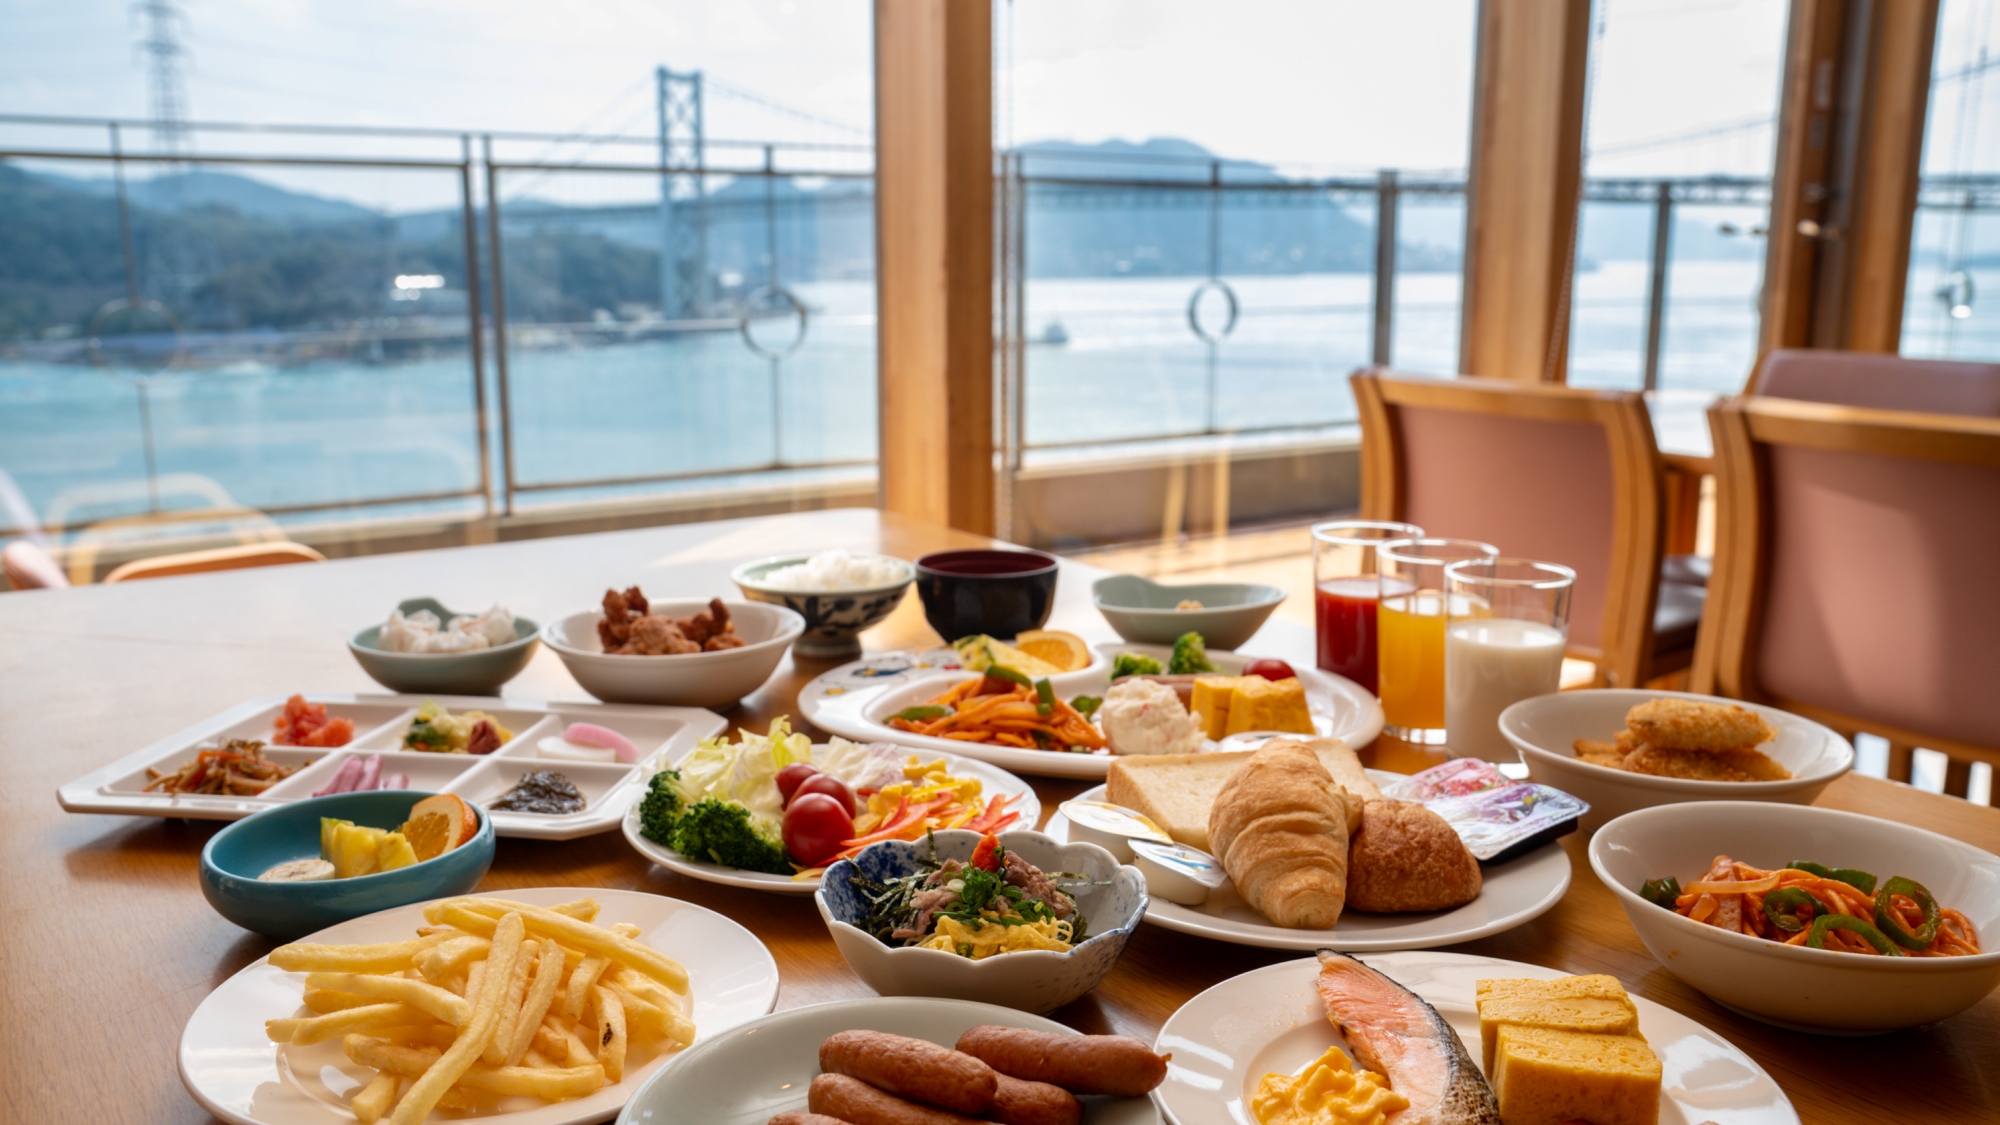 【朝食】朝日の昇る幻想的な海峡を望みながらの朝食